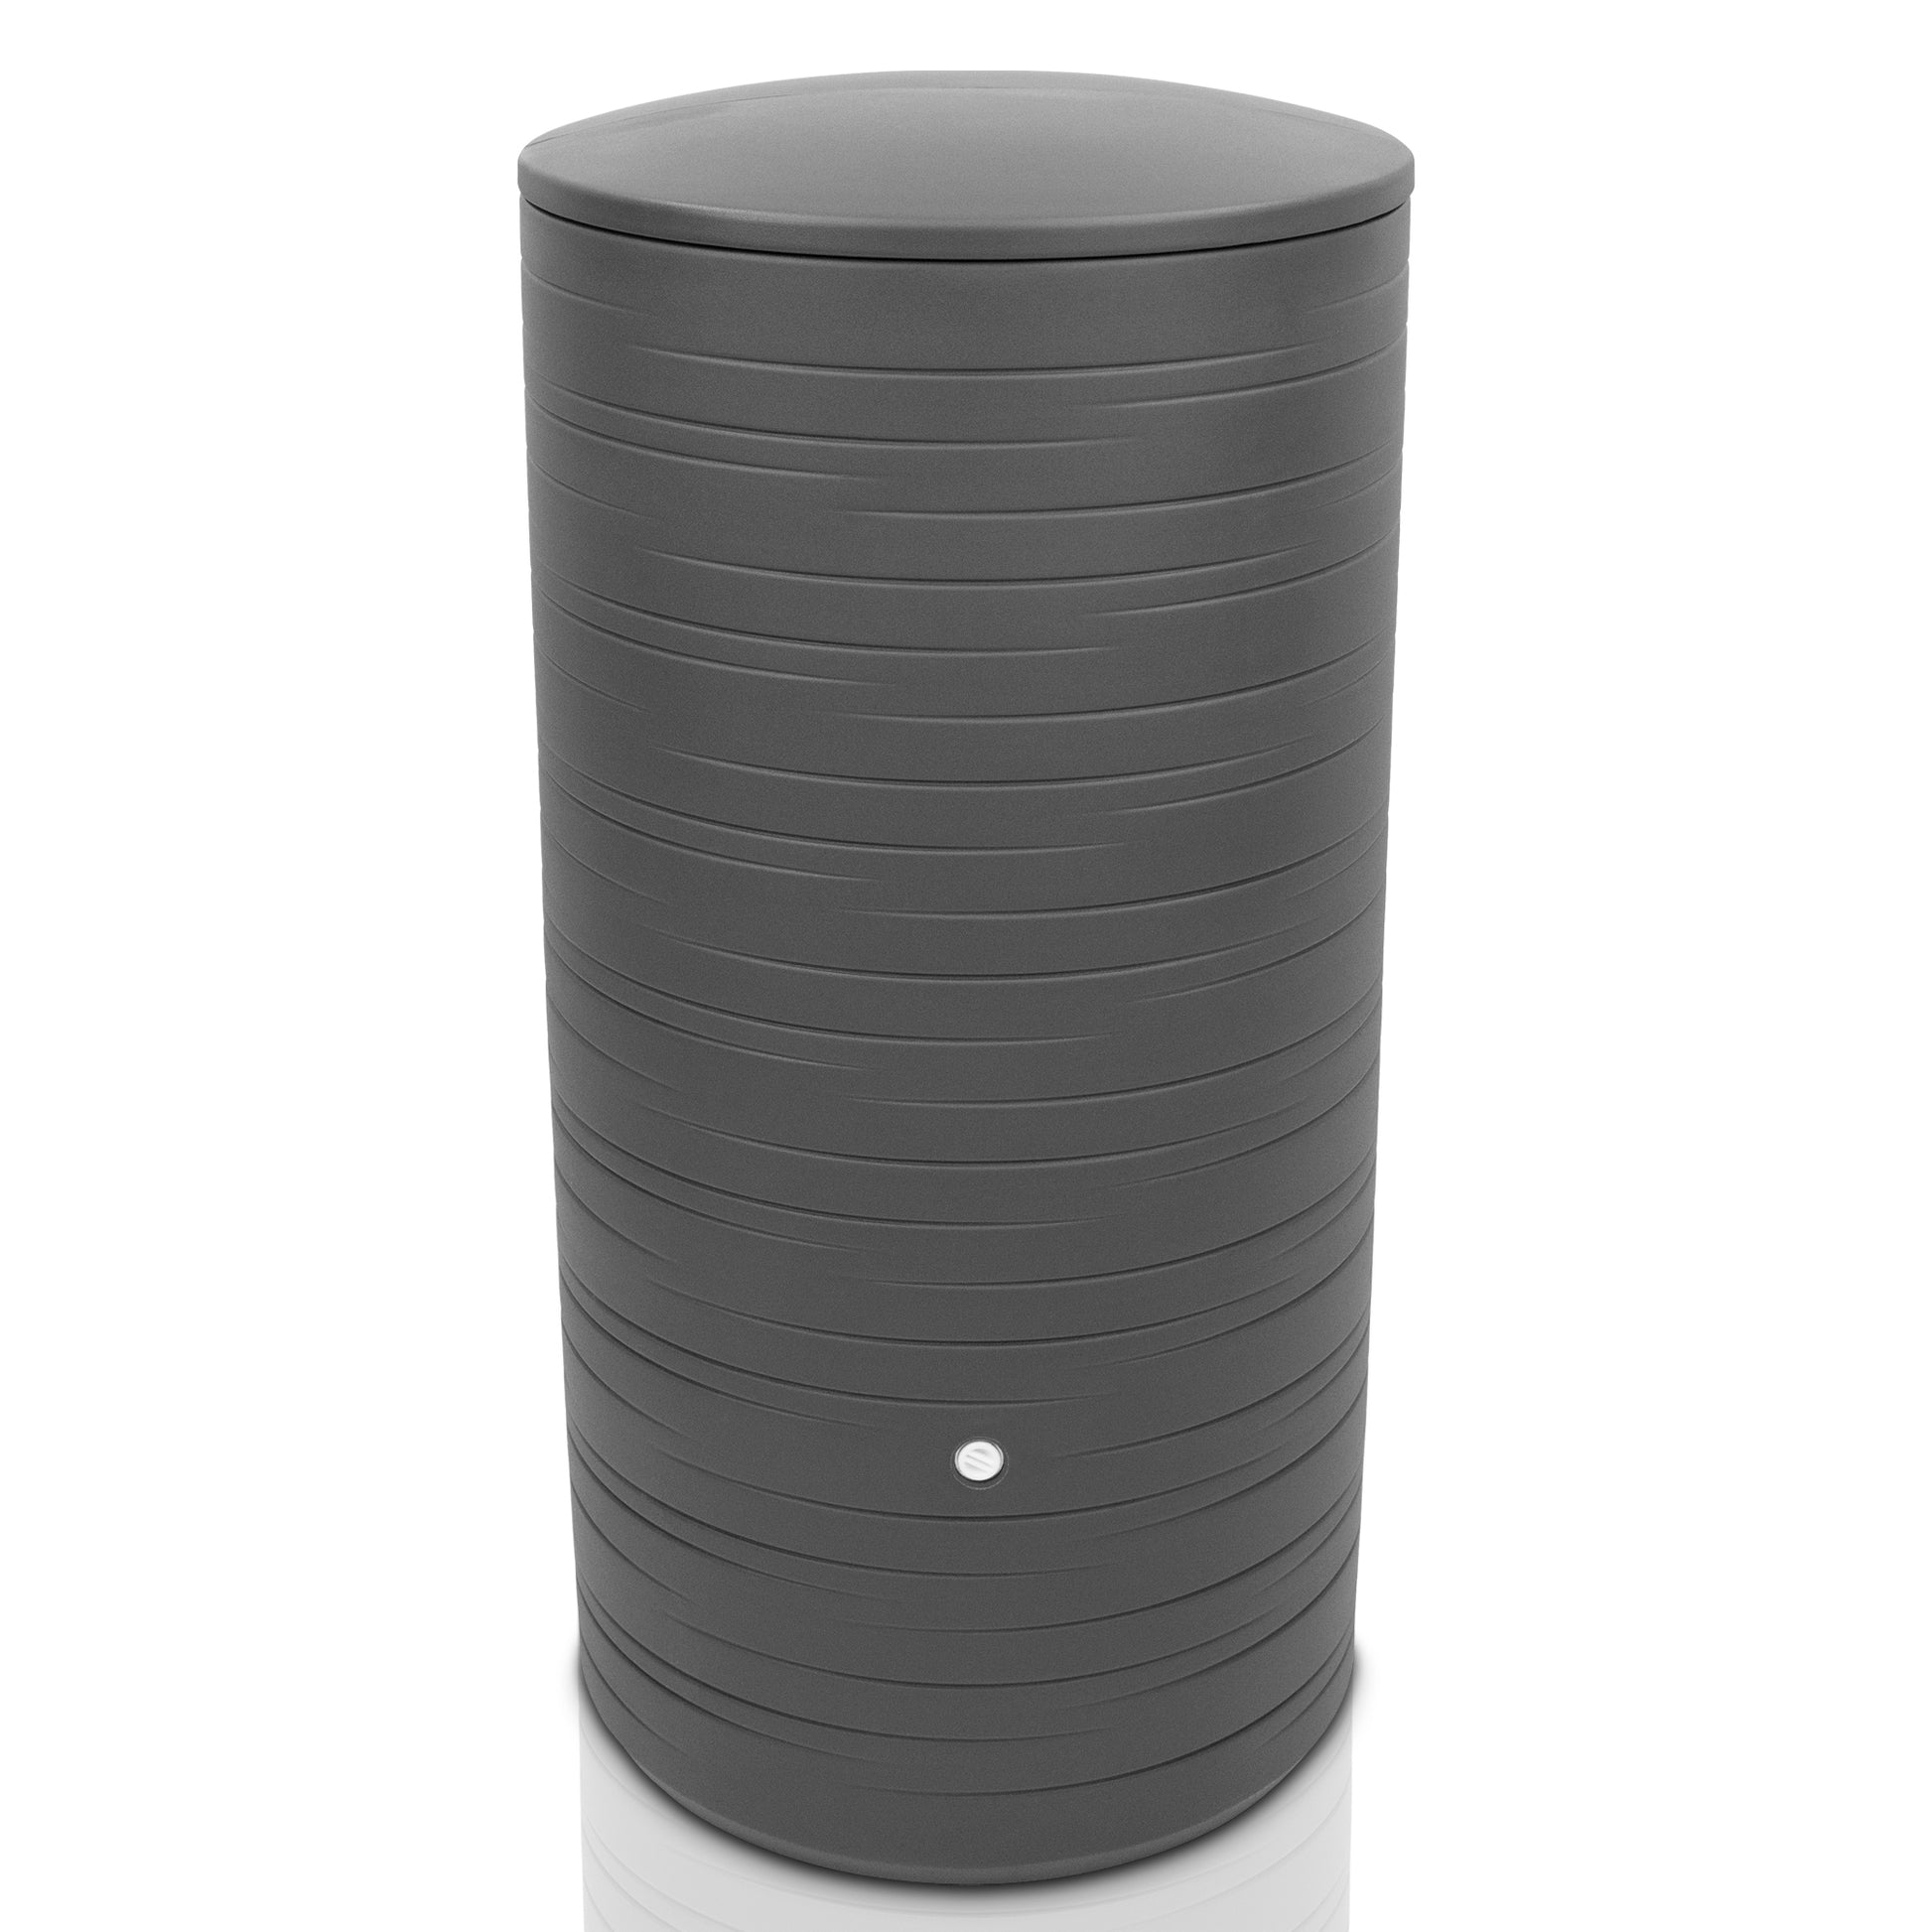 Moderne zylindrische YourCasa Regentonne 280 Liter [PureRain] mit geripptem Design und einzelnem Knopfdetail.